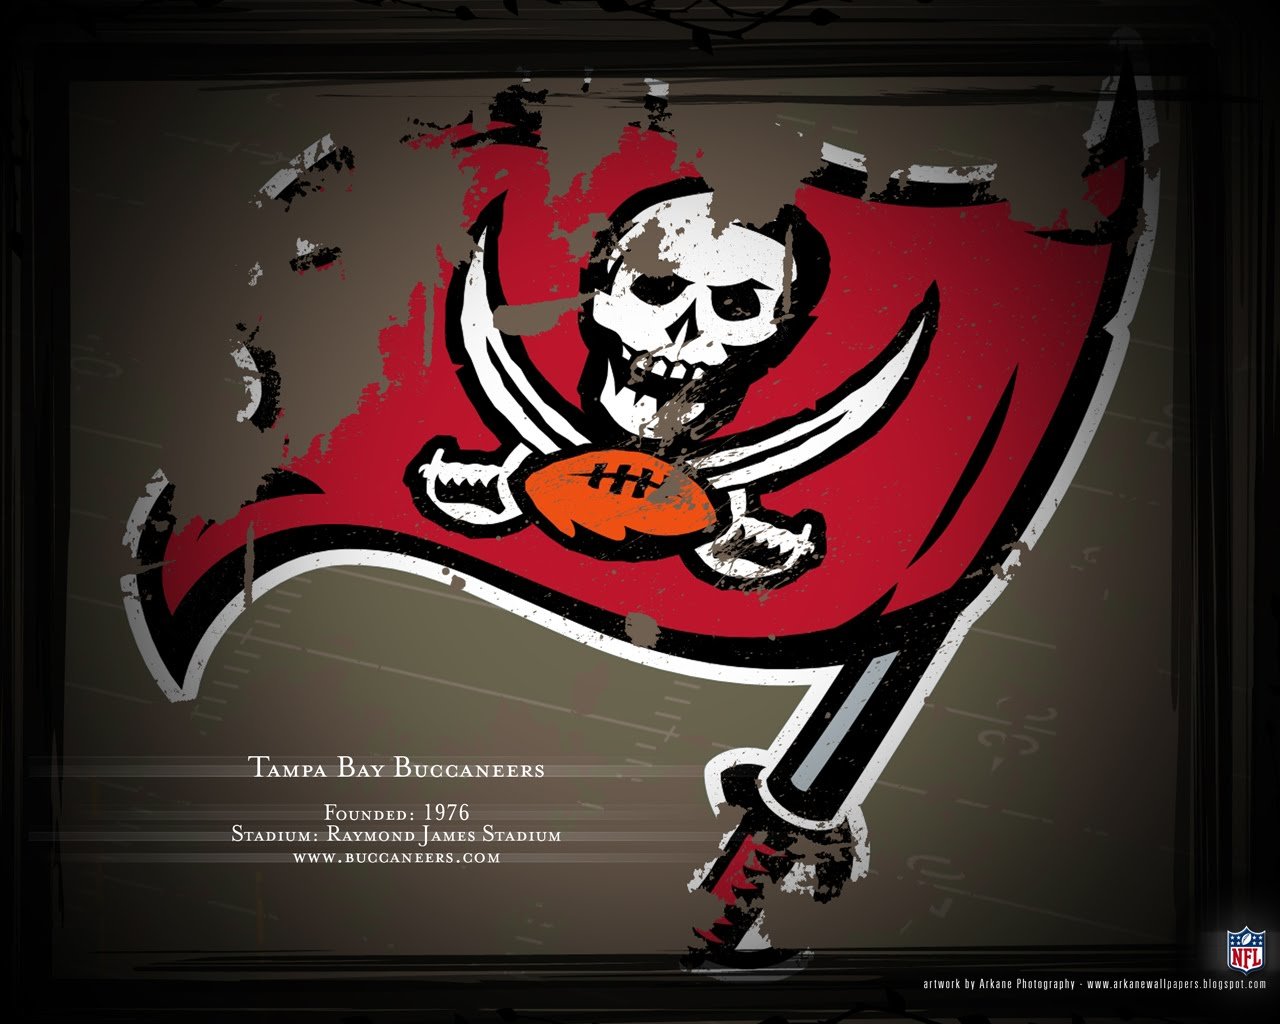 Tampa Bay Buccaneers wallpaper HD for desktop background